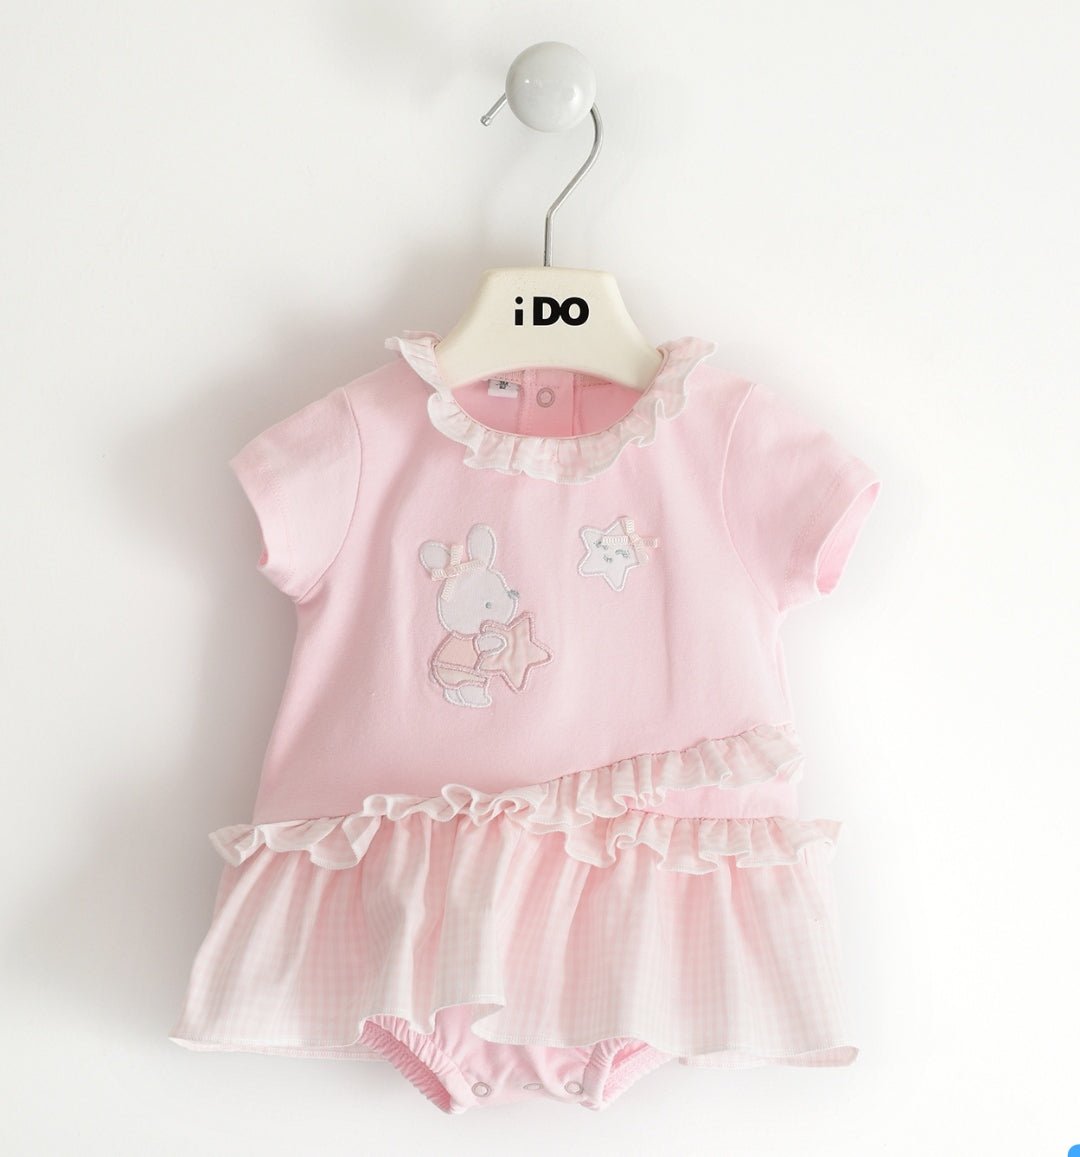 Pagliaccetto neonata rousce - Coccole e Ricami |email: info@coccoleericami.shop| P.Iva 09642670583